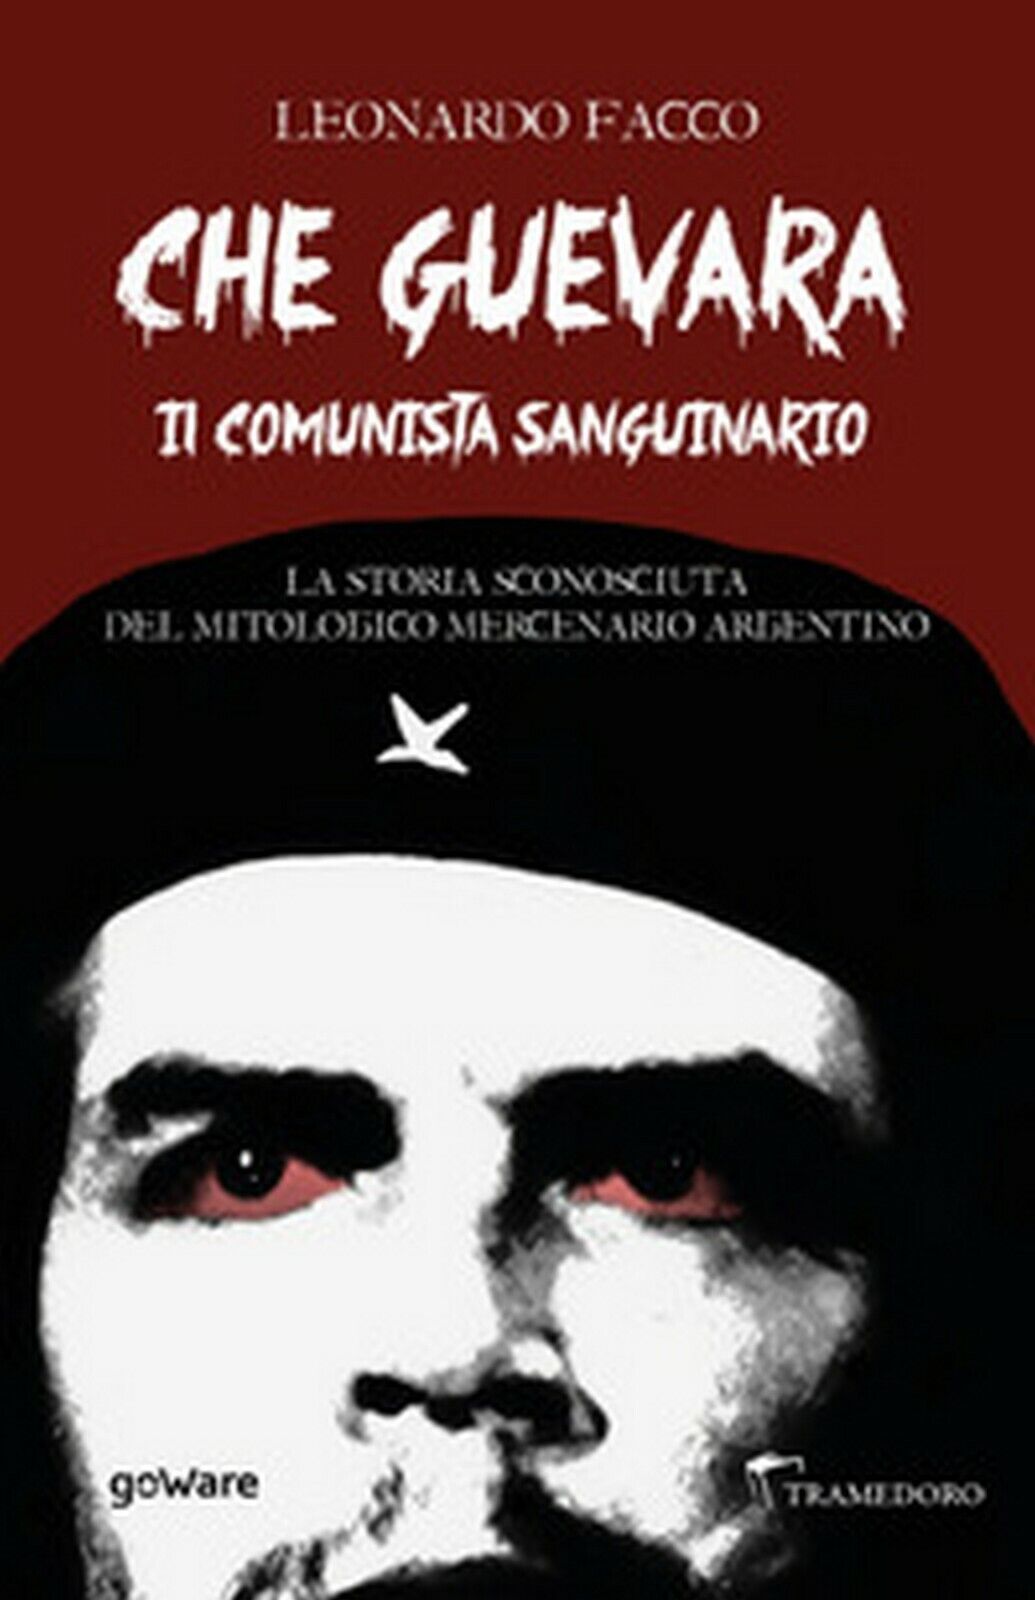 Che Guevara il comunista sanguinario. La storia sconosciuta del mitologico merce libro usato